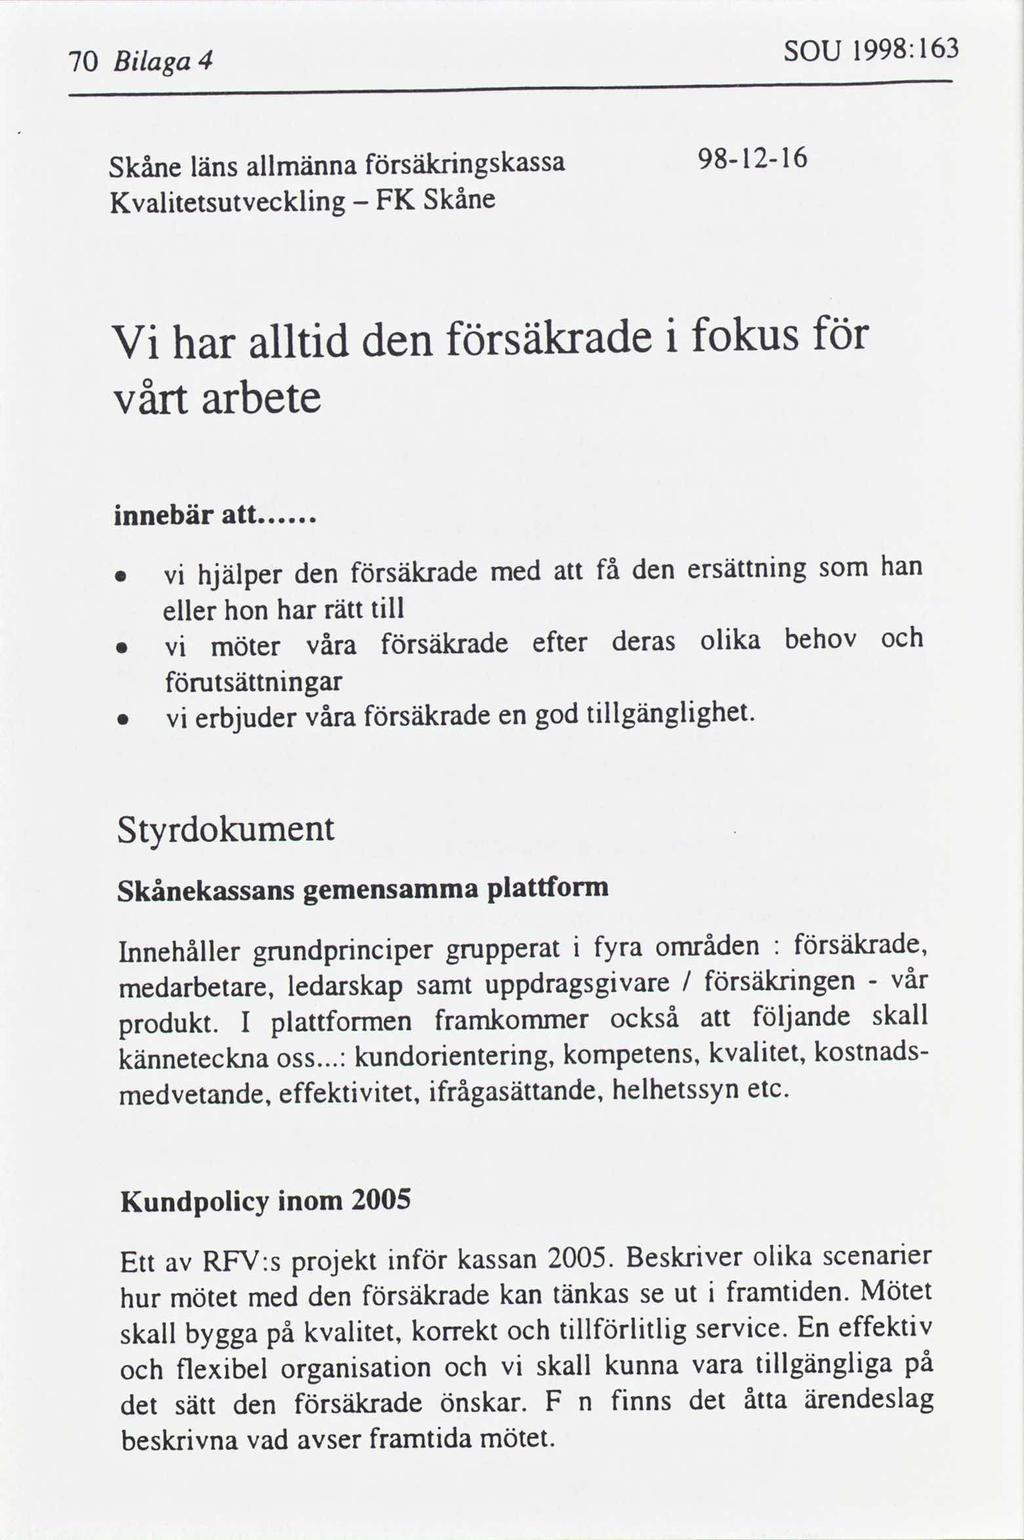 1998:163 sou Blaga 4 70 1216 98 säkrngskassa allmänna Skåne läns Skåne FK Kvaltetsutvecklng fokus säkrade den alltd har V vårt arbete nnebär.